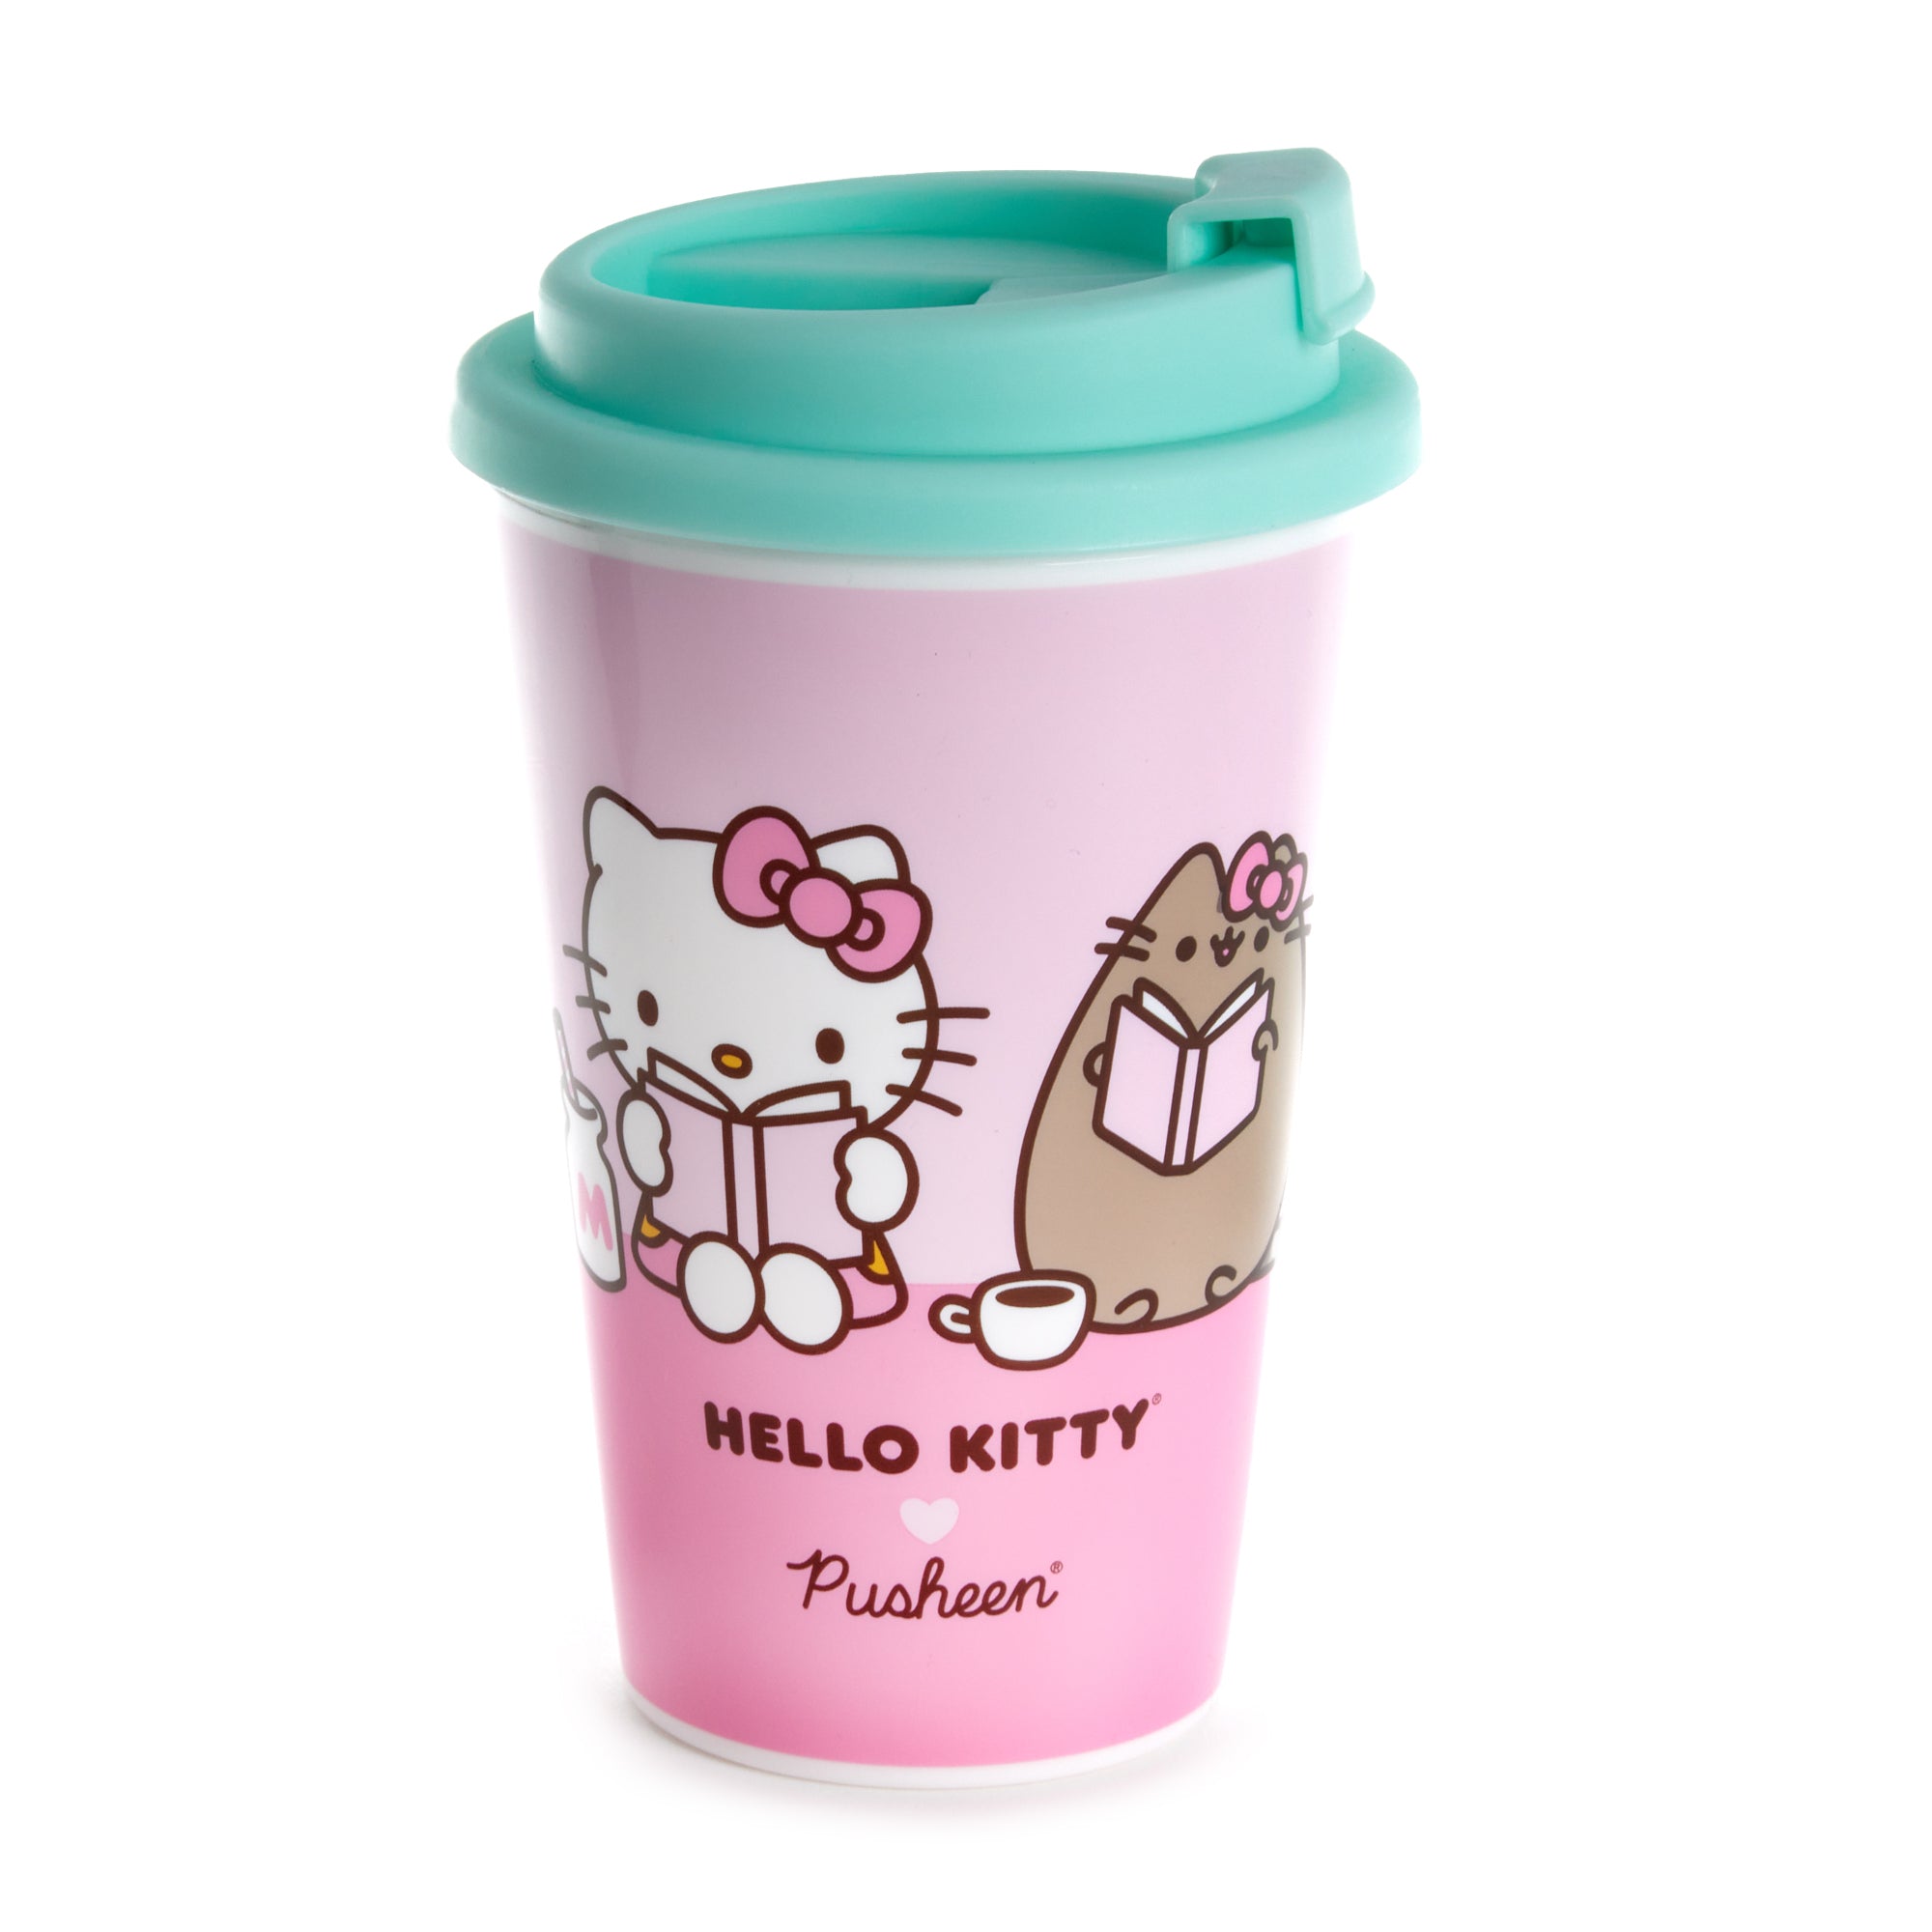 aanval vraag naar Wetland Hello Kitty x Pusheen Travel Mug